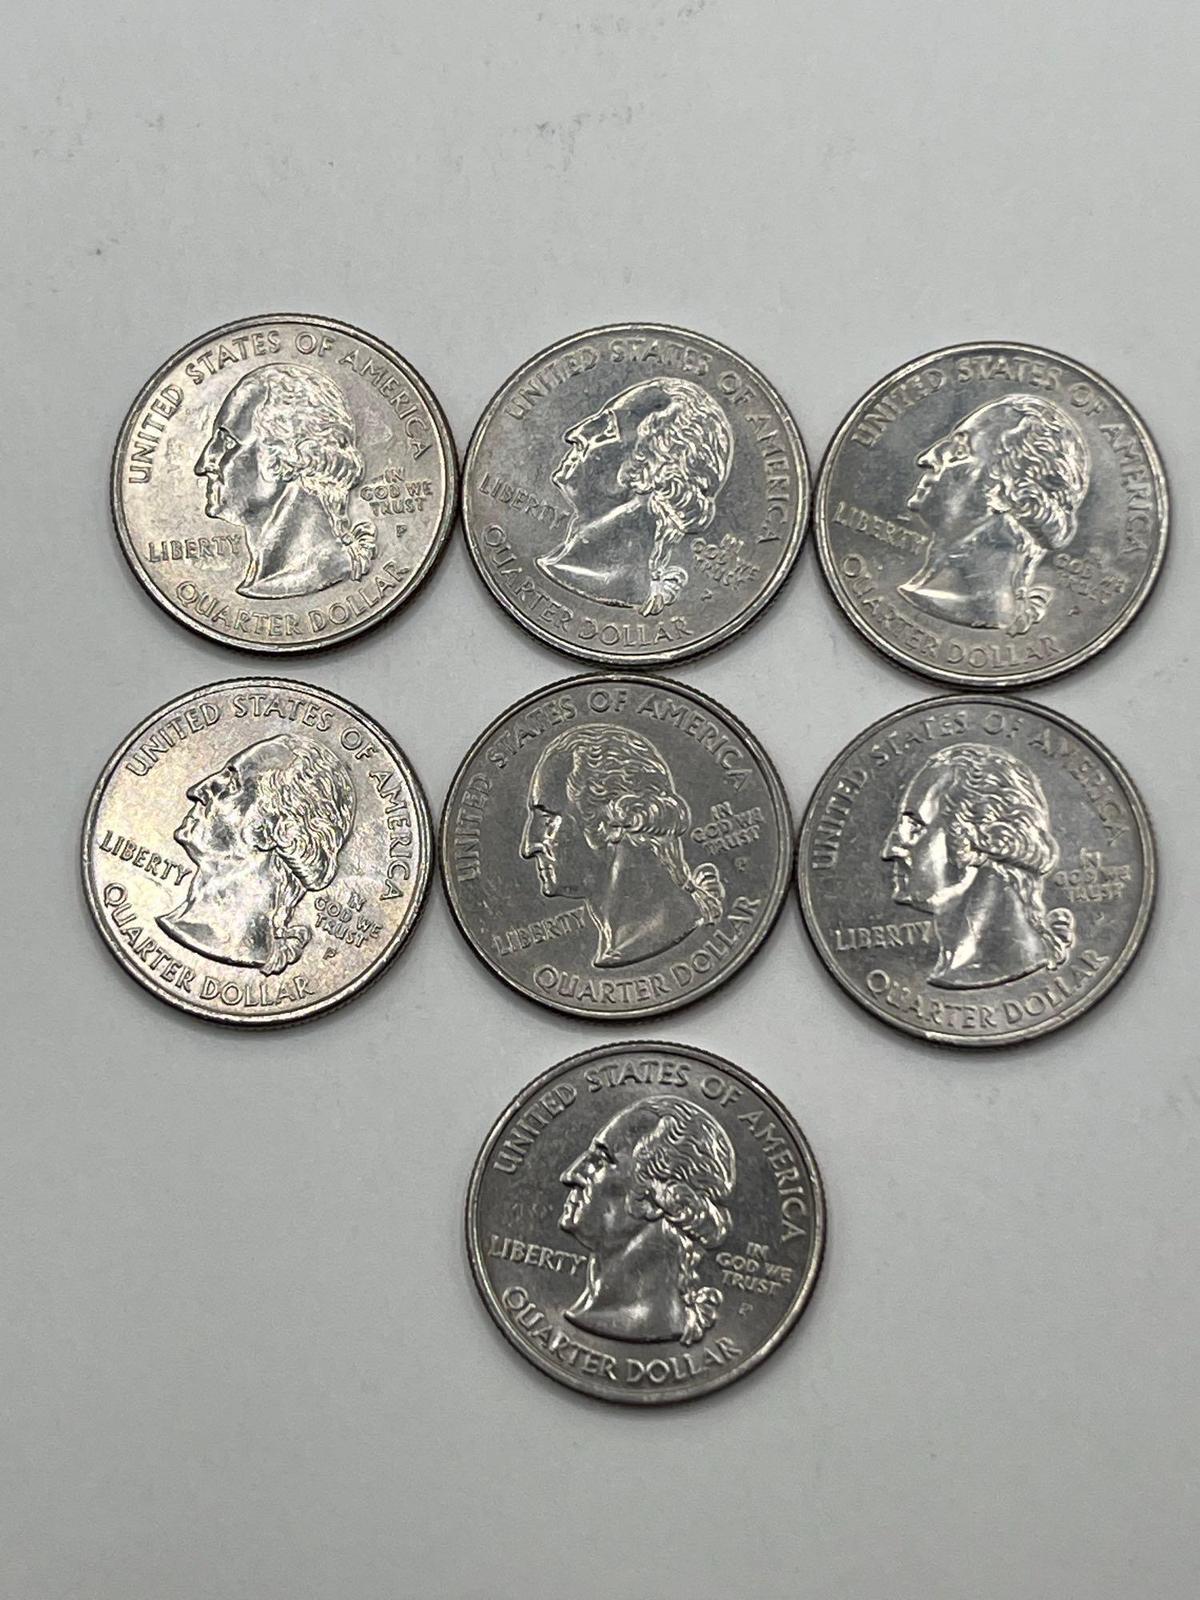 Quarters, Washington 2007P, AU, (7 Total)